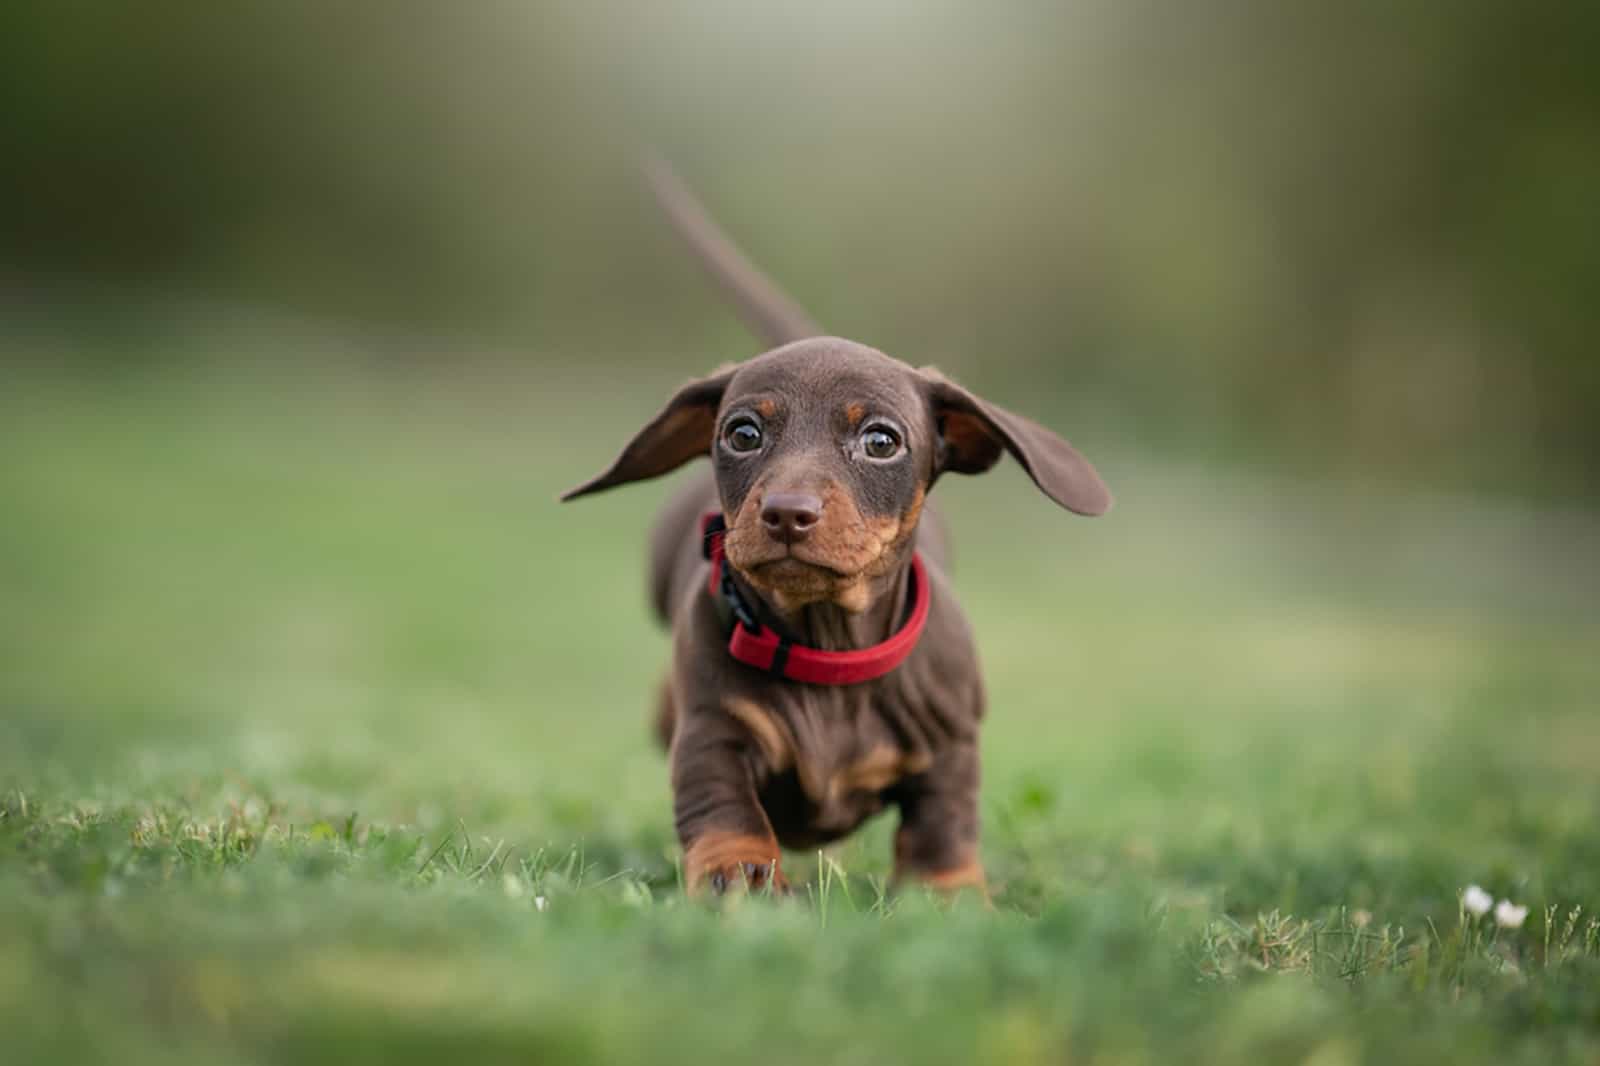 dachshund puppy running in the park